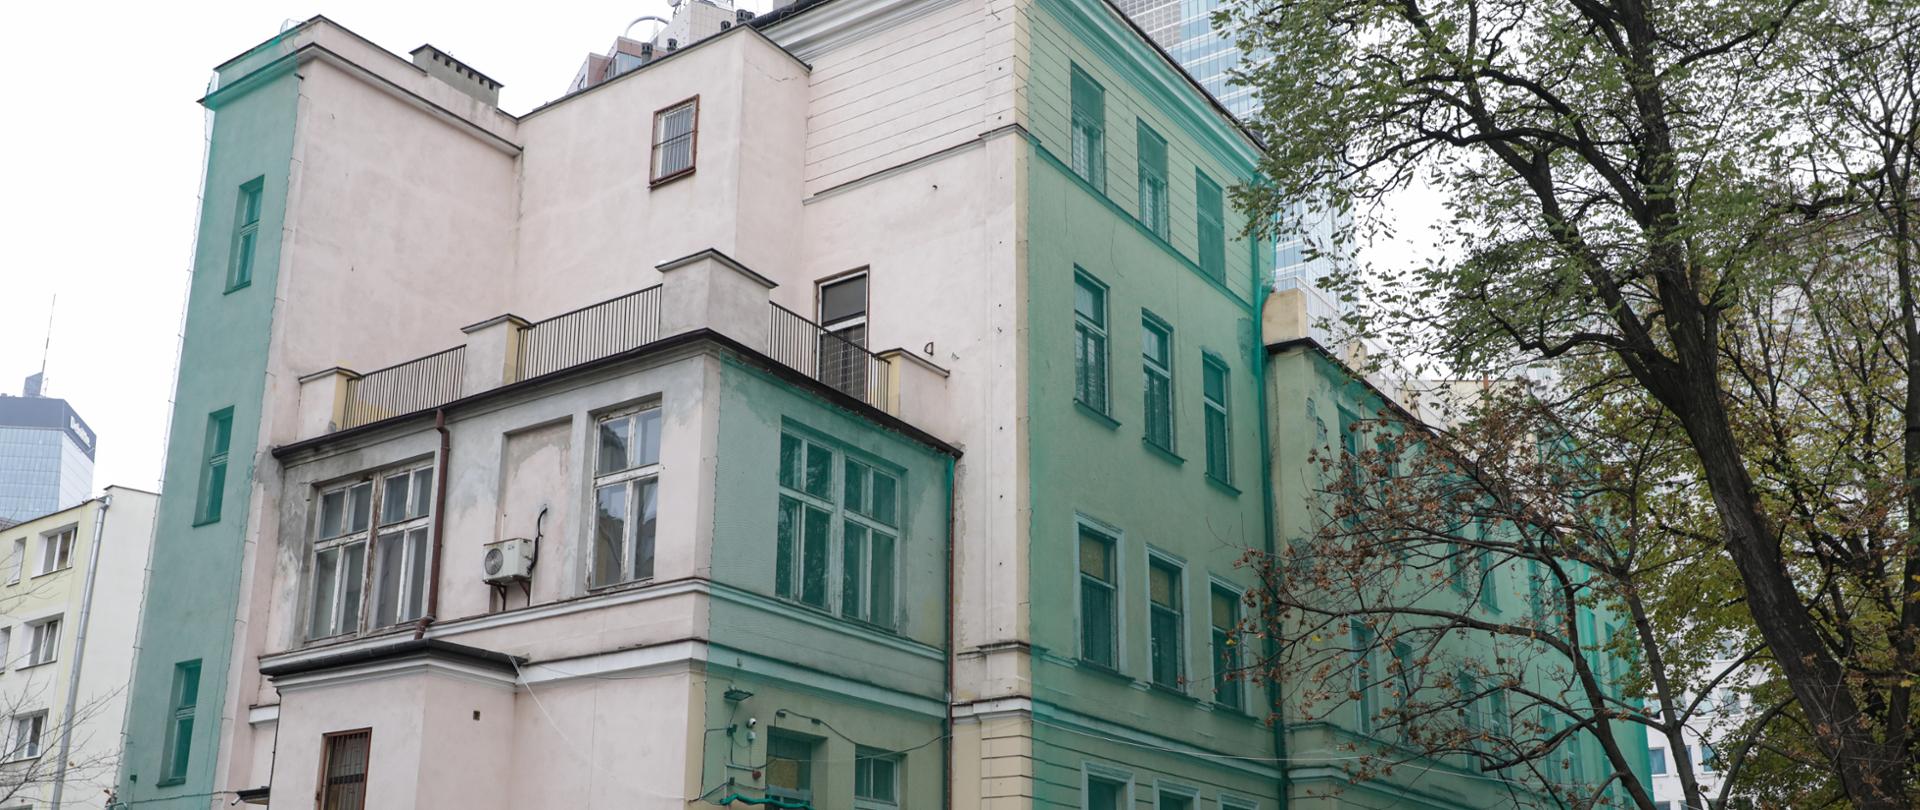 Budynek o 140-letniej historii będzie siedzibą Muzeum Getta Warszawskiego, fot Danuta Matloch